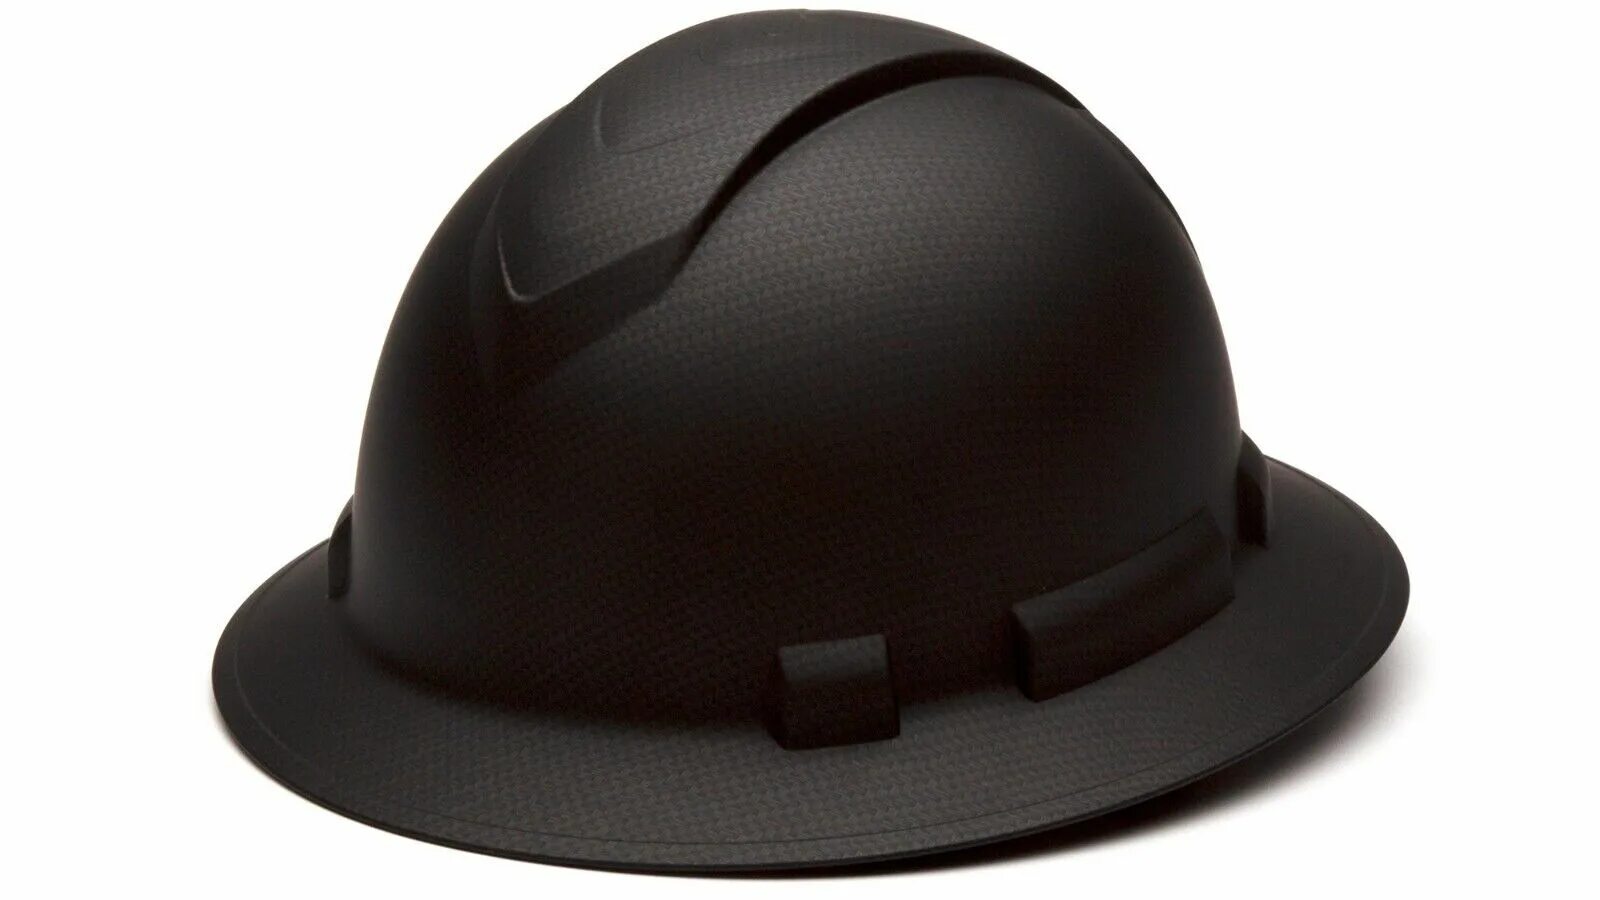 Купить каску шляпу строительную. Шляпка-каска. Каска шляпа. Каска строительная шляпа. Металлическая строительная каска.